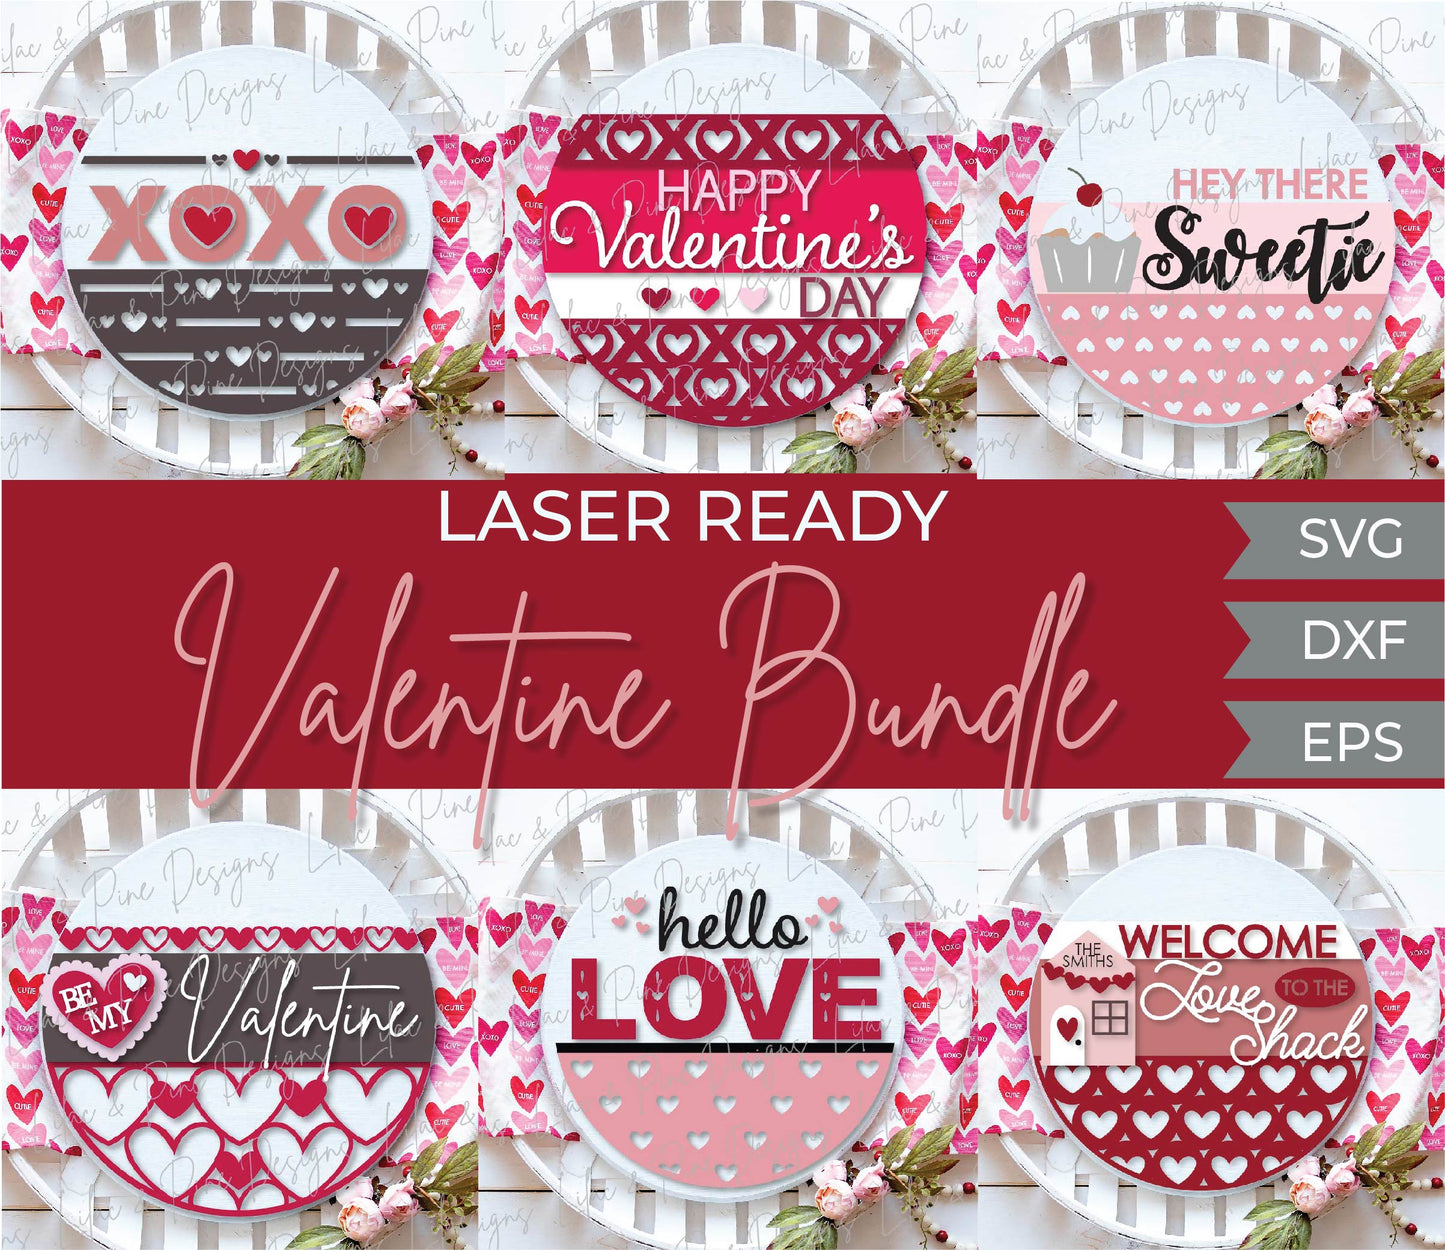 Complete Valentine bundle - 18 FILES - volume 1, door hanger sign SVG, Valentine decor laser SVG, Glowforge SVG